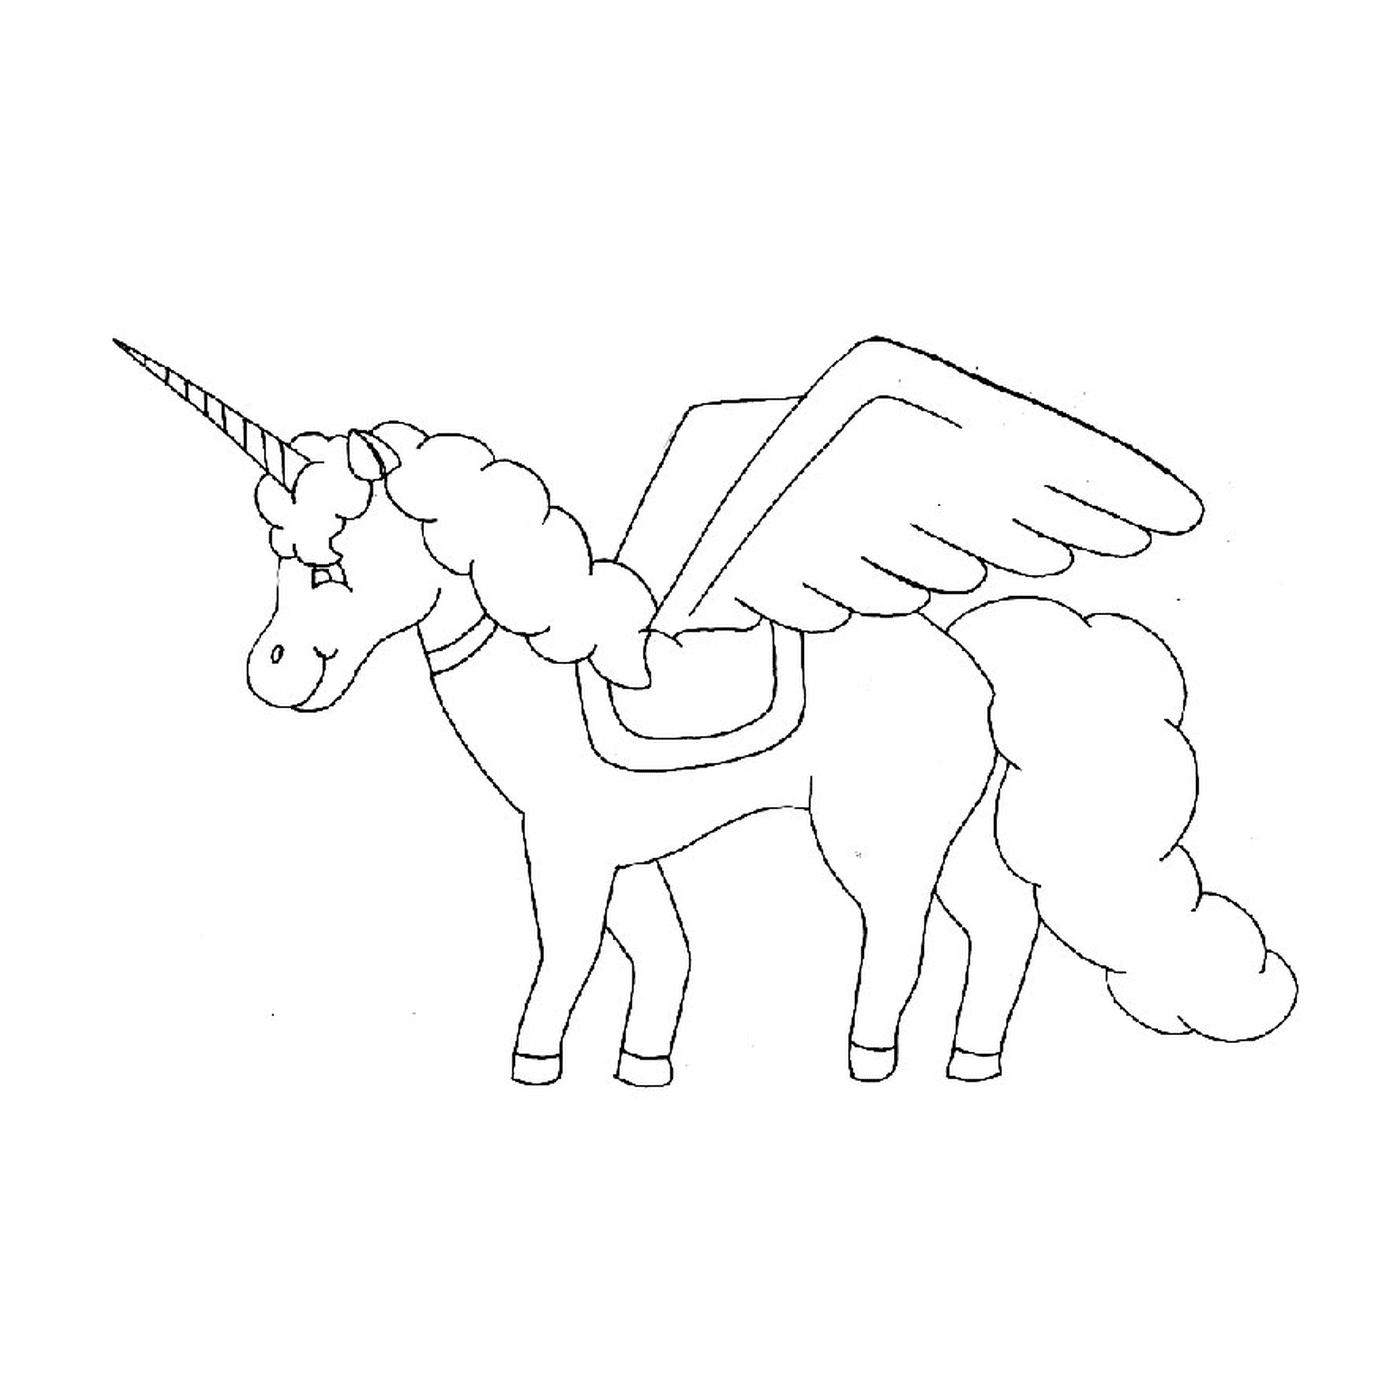  Caballo volador - Un unicornio con alas 